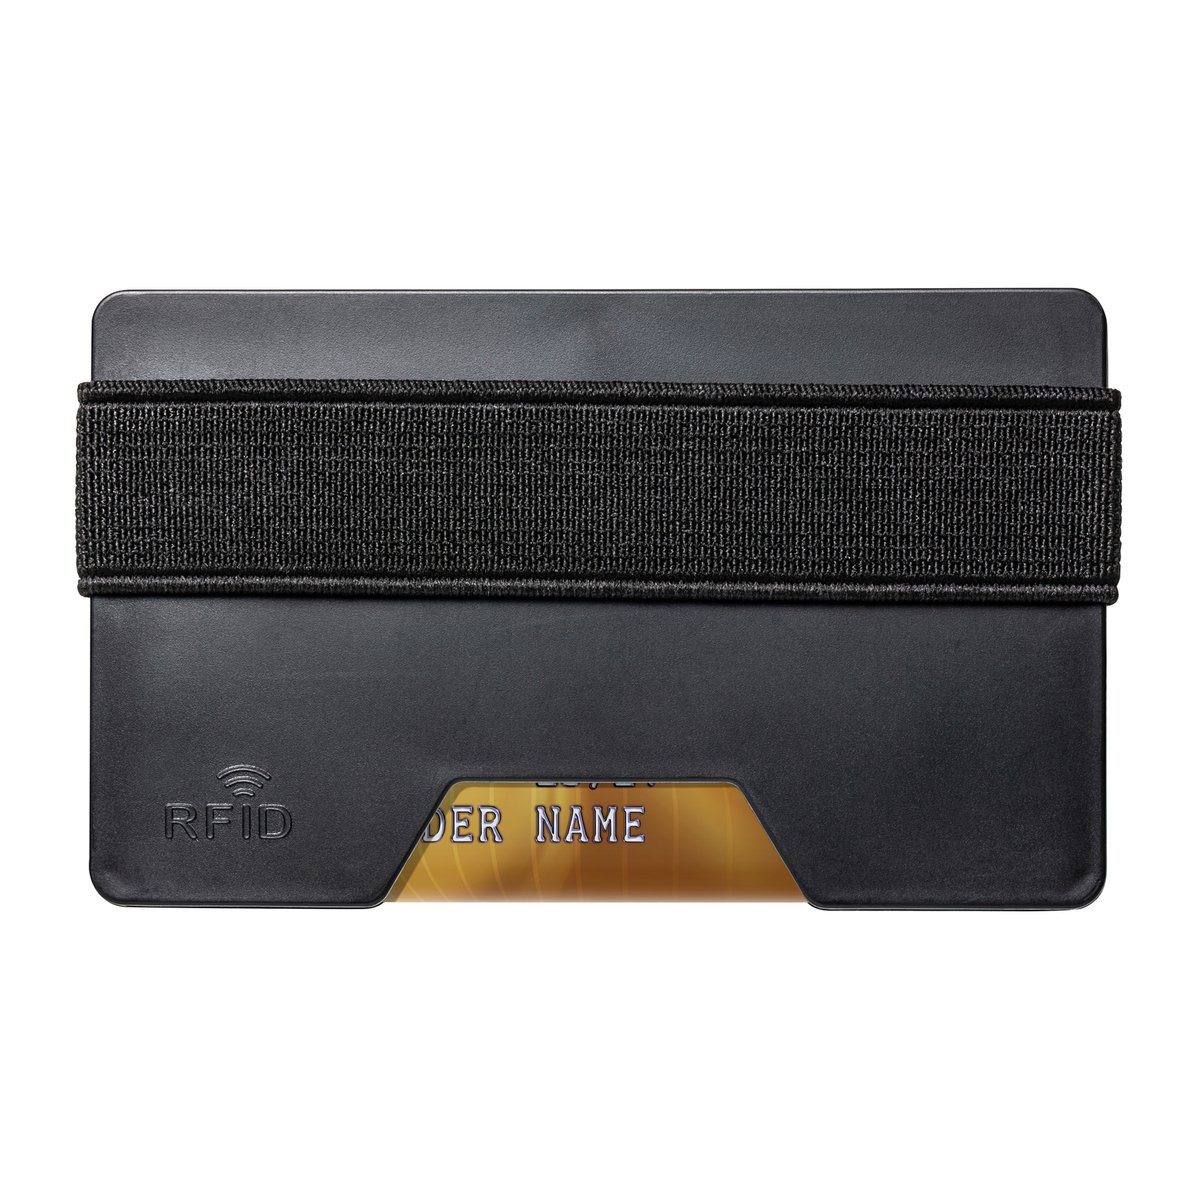 Kartenetui mit RFID-Ausleseschutz REFLECTS-LOMITA schwarz